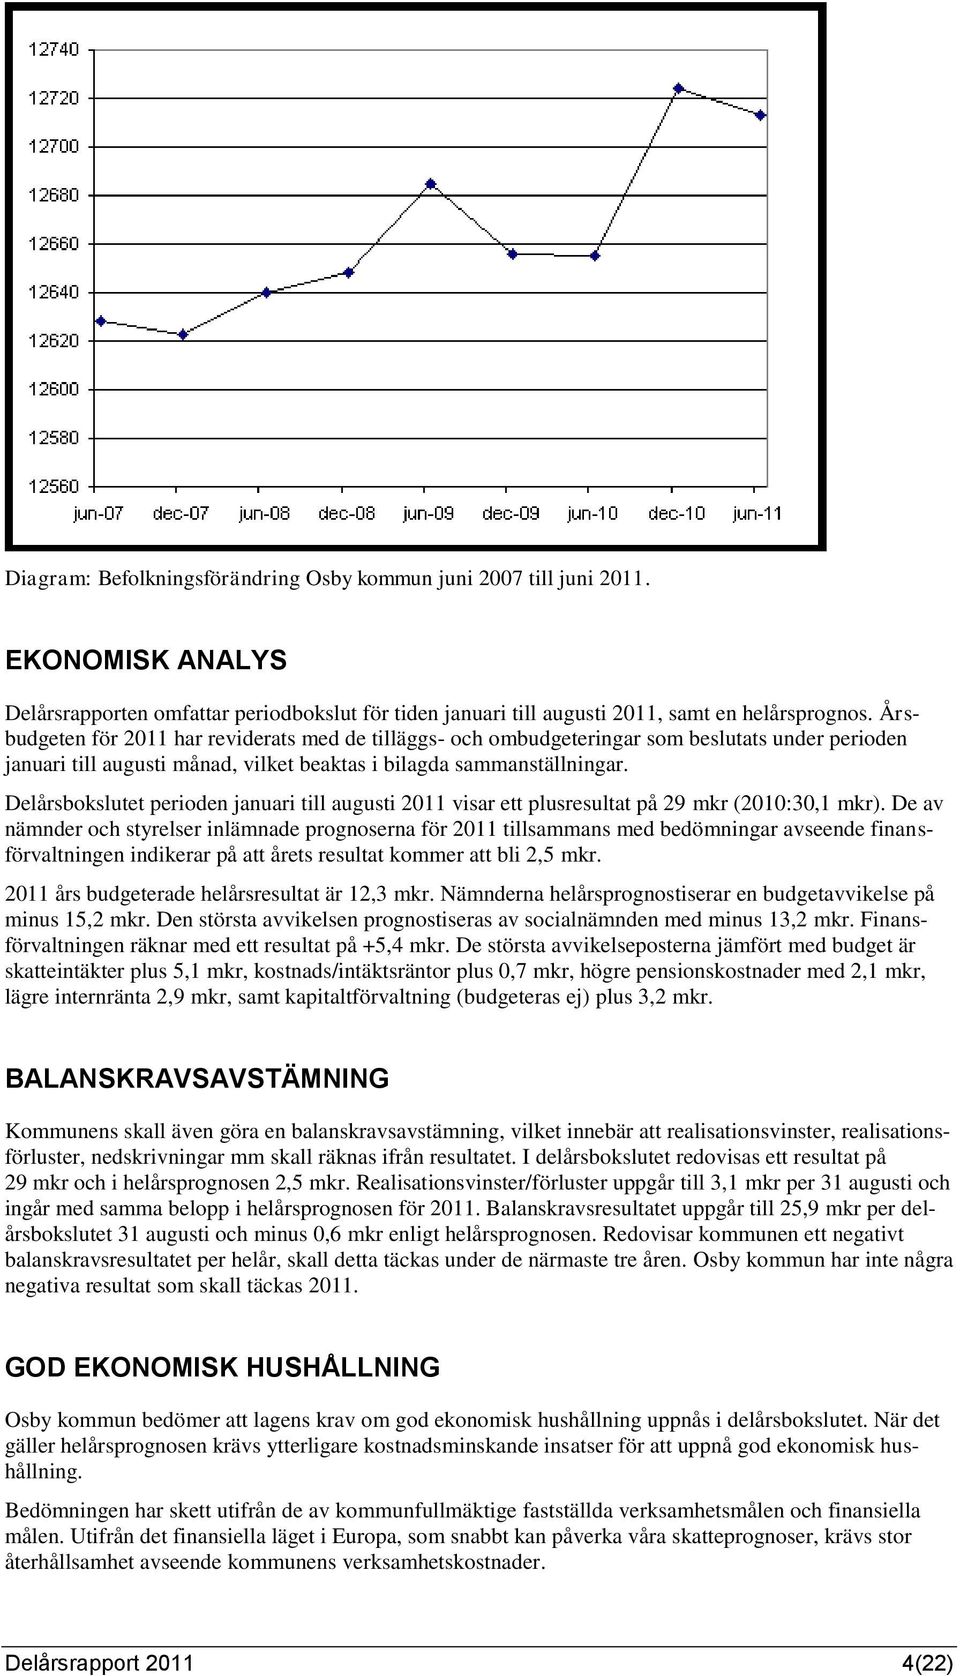 Delårsbokslutet perioden januari till augusti 2011 visar ett plusresultat på 29 mkr (2010:30,1 mkr).